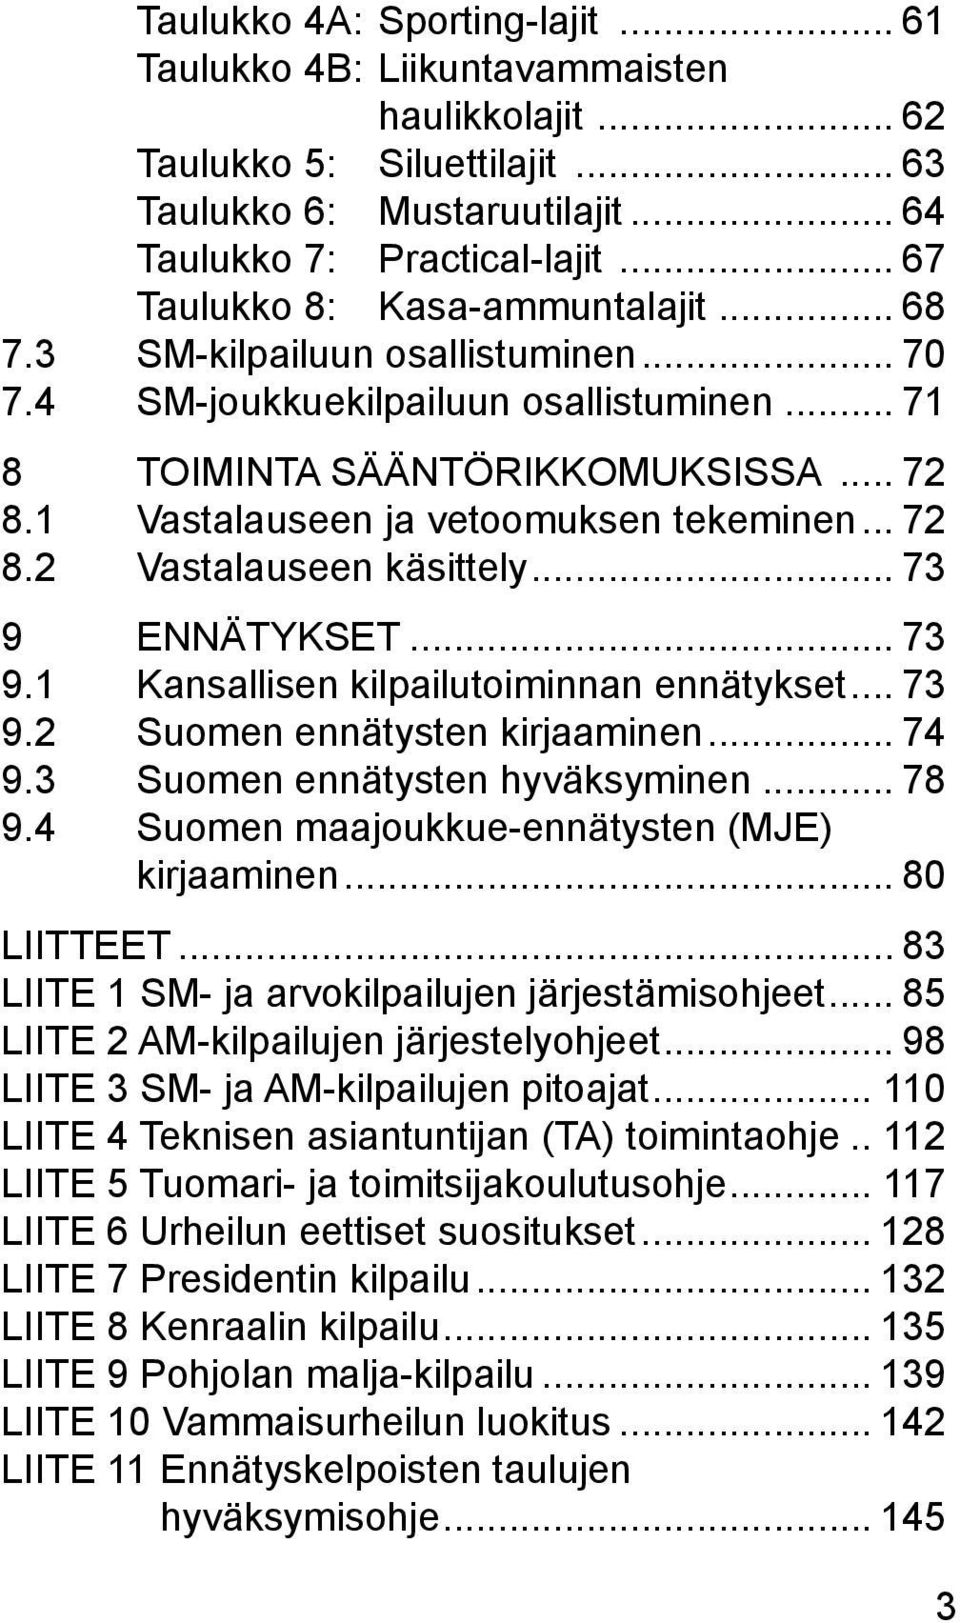 1 Vastalauseen ja vetoomuksen tekeminen... 72 8.2 Vastalauseen käsittely... 73 9 ENNÄTYKSET... 73 9.1 Kansallisen kilpailutoiminnan ennätykset... 73 9.2 Suomen ennätysten kirjaaminen... 74 9.